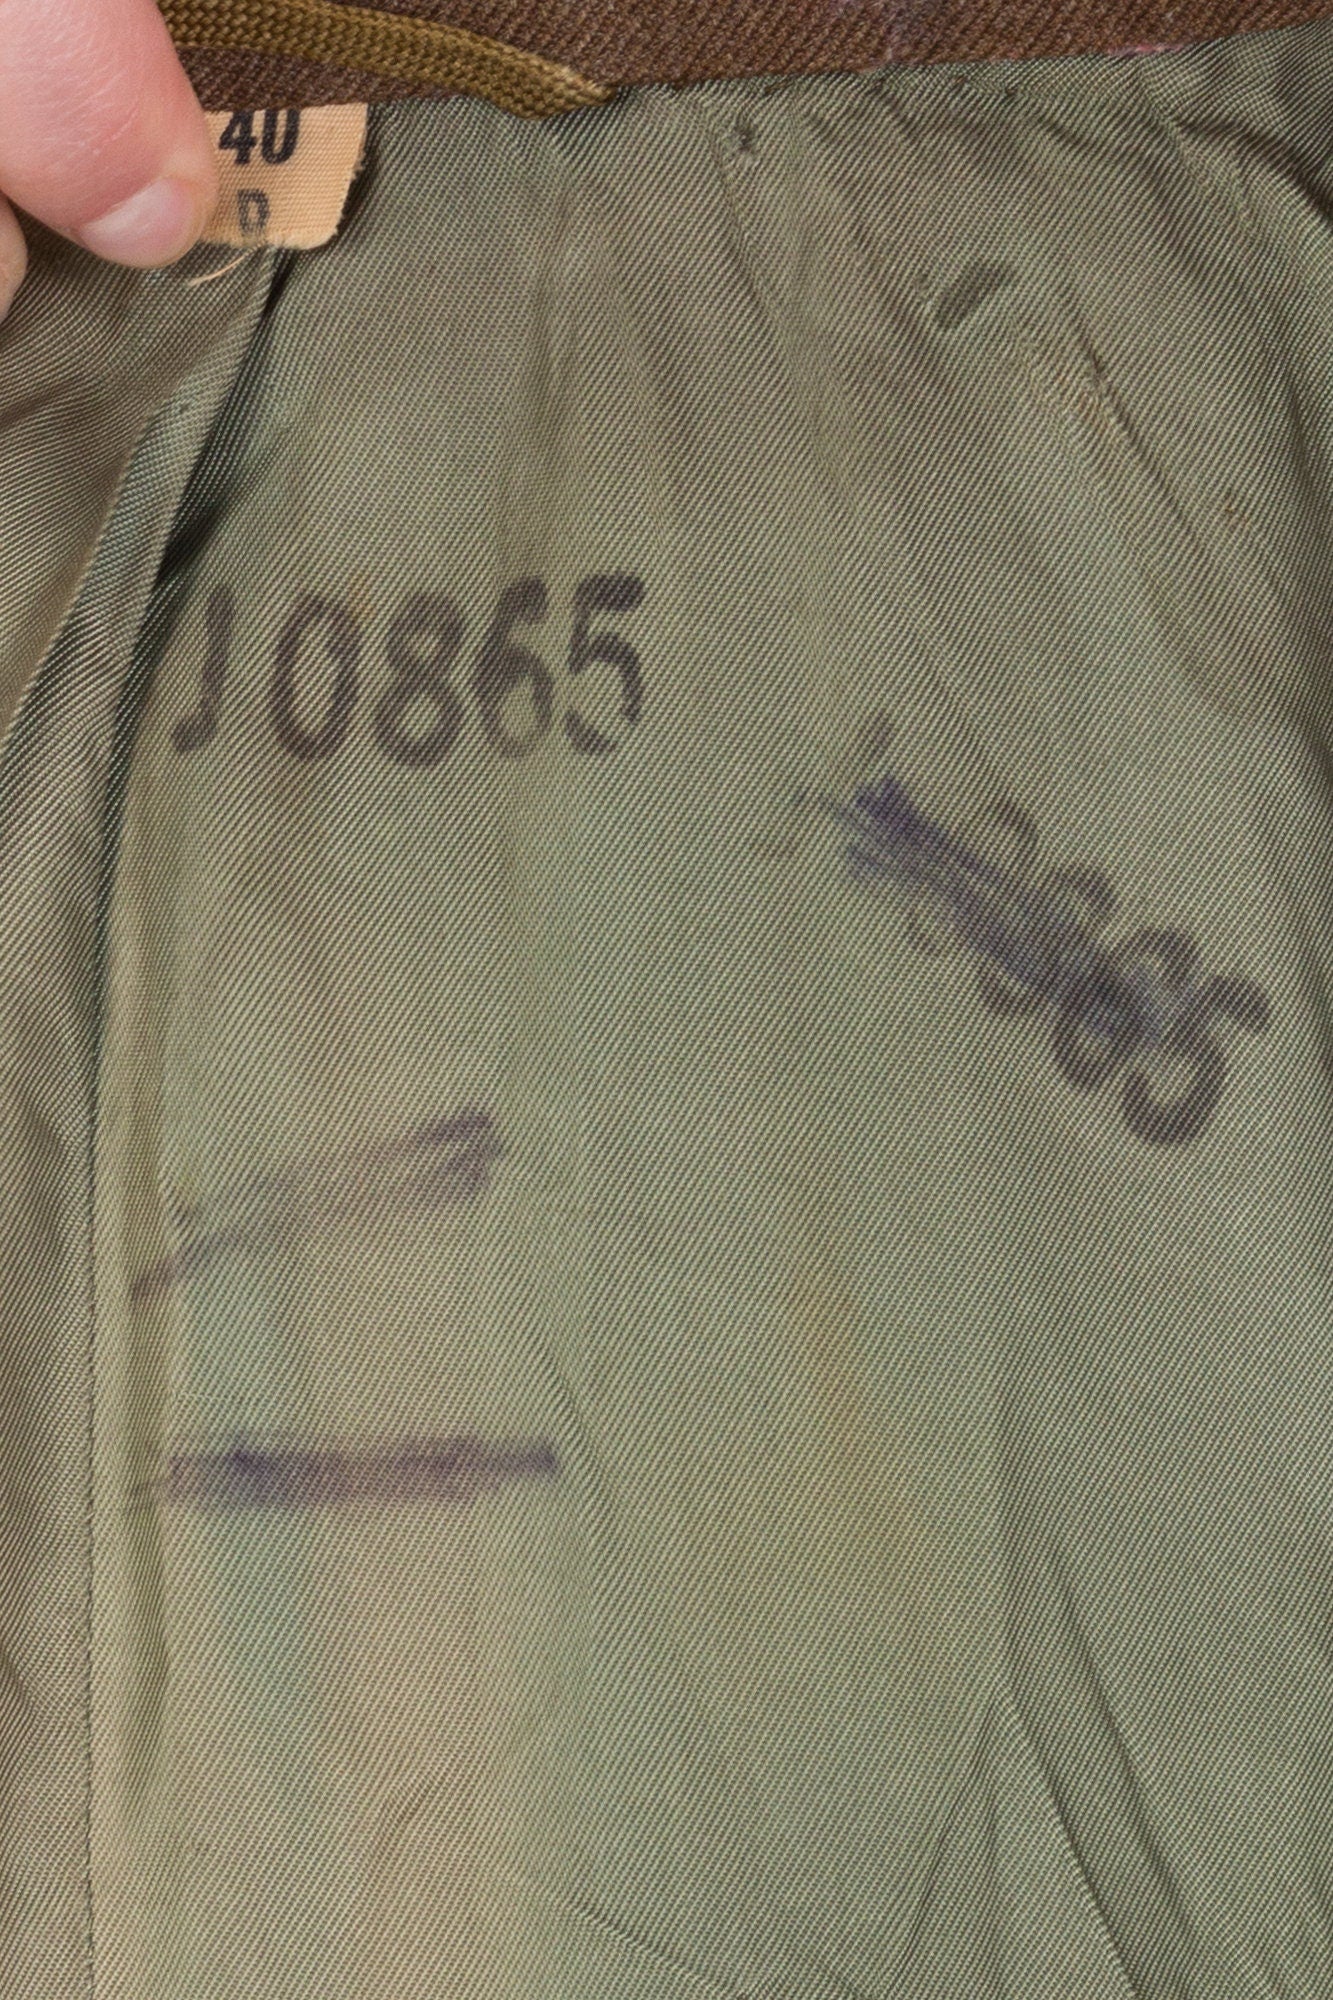 Vintage Korean War Era Cropped Ike Army Jacket - 40R 